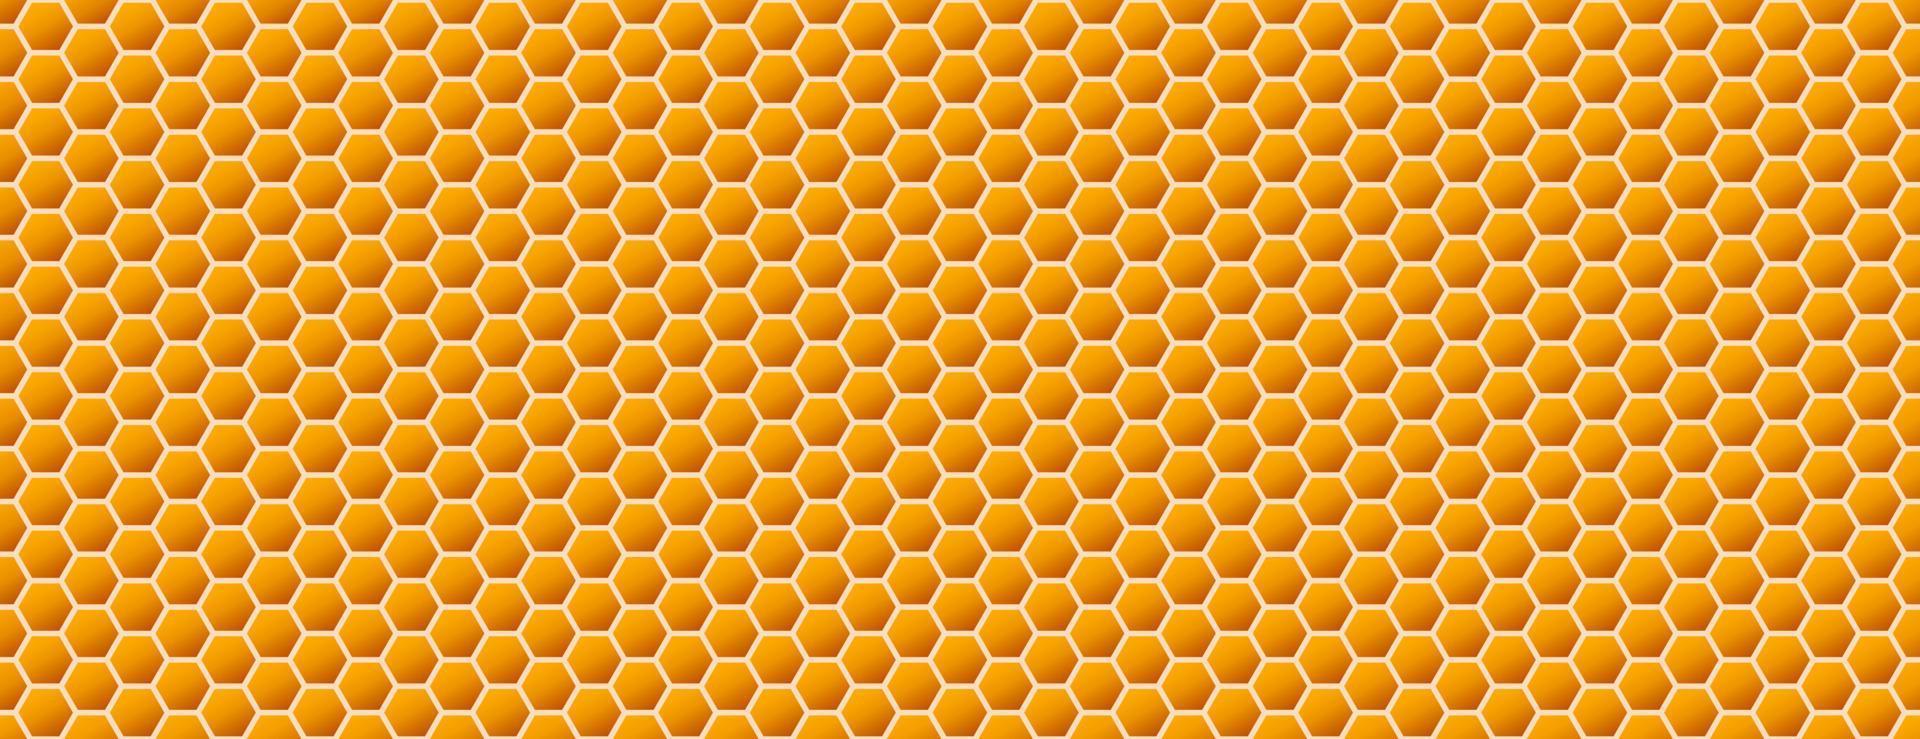 fond en nid d'abeille. modèle sans couture de ruche. illustration vectorielle du symbole de texture géométrique plat. hexagone, raster hexagonal, signe ou icône de cellule en mosaïque. ruche d'abeilles, jaune orangé doré. vecteur